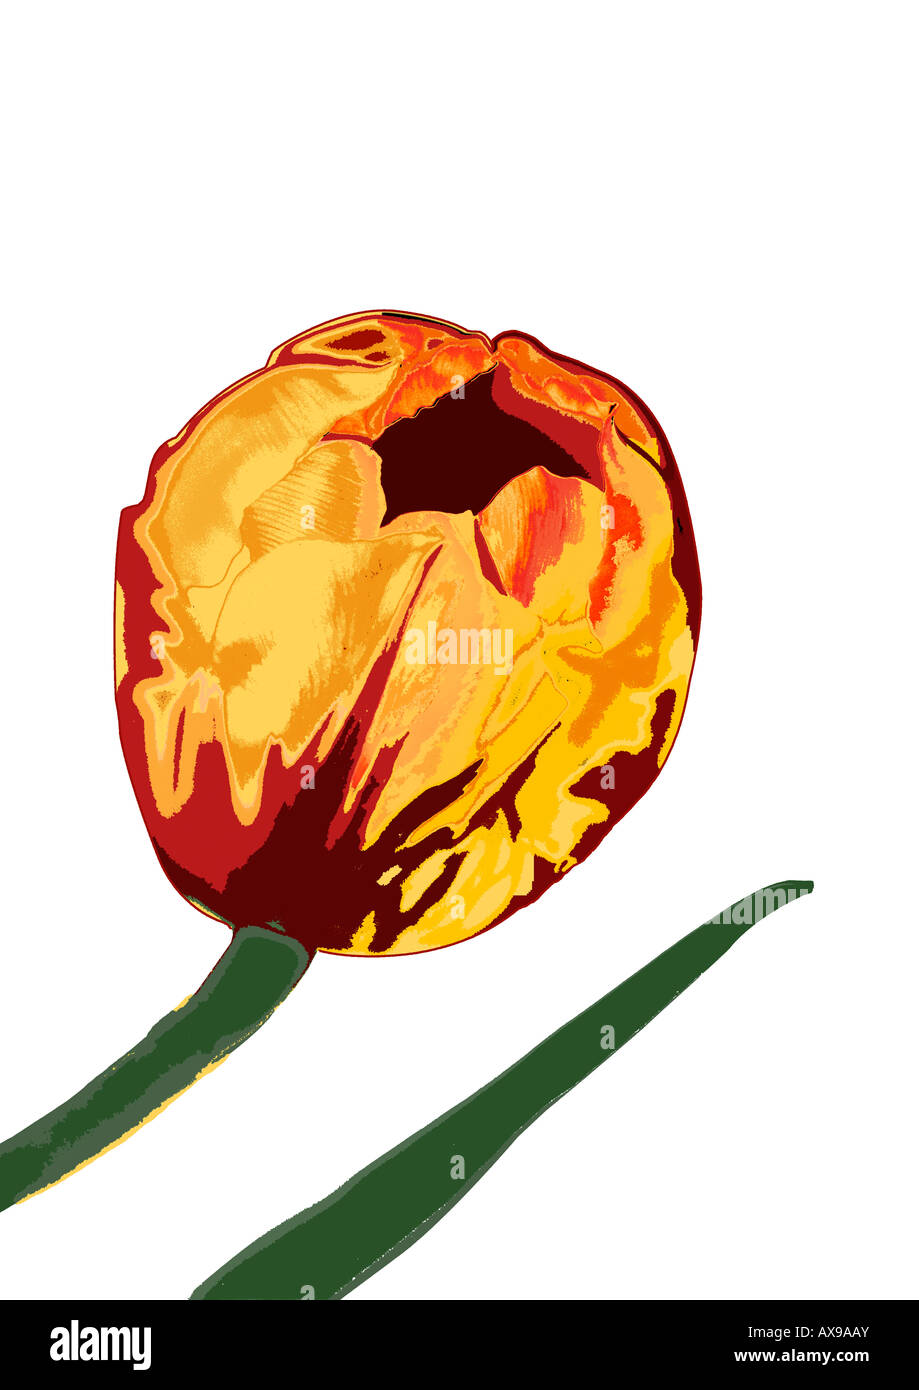 Ilustración de tulip sobre fondo blanco. Foto de stock